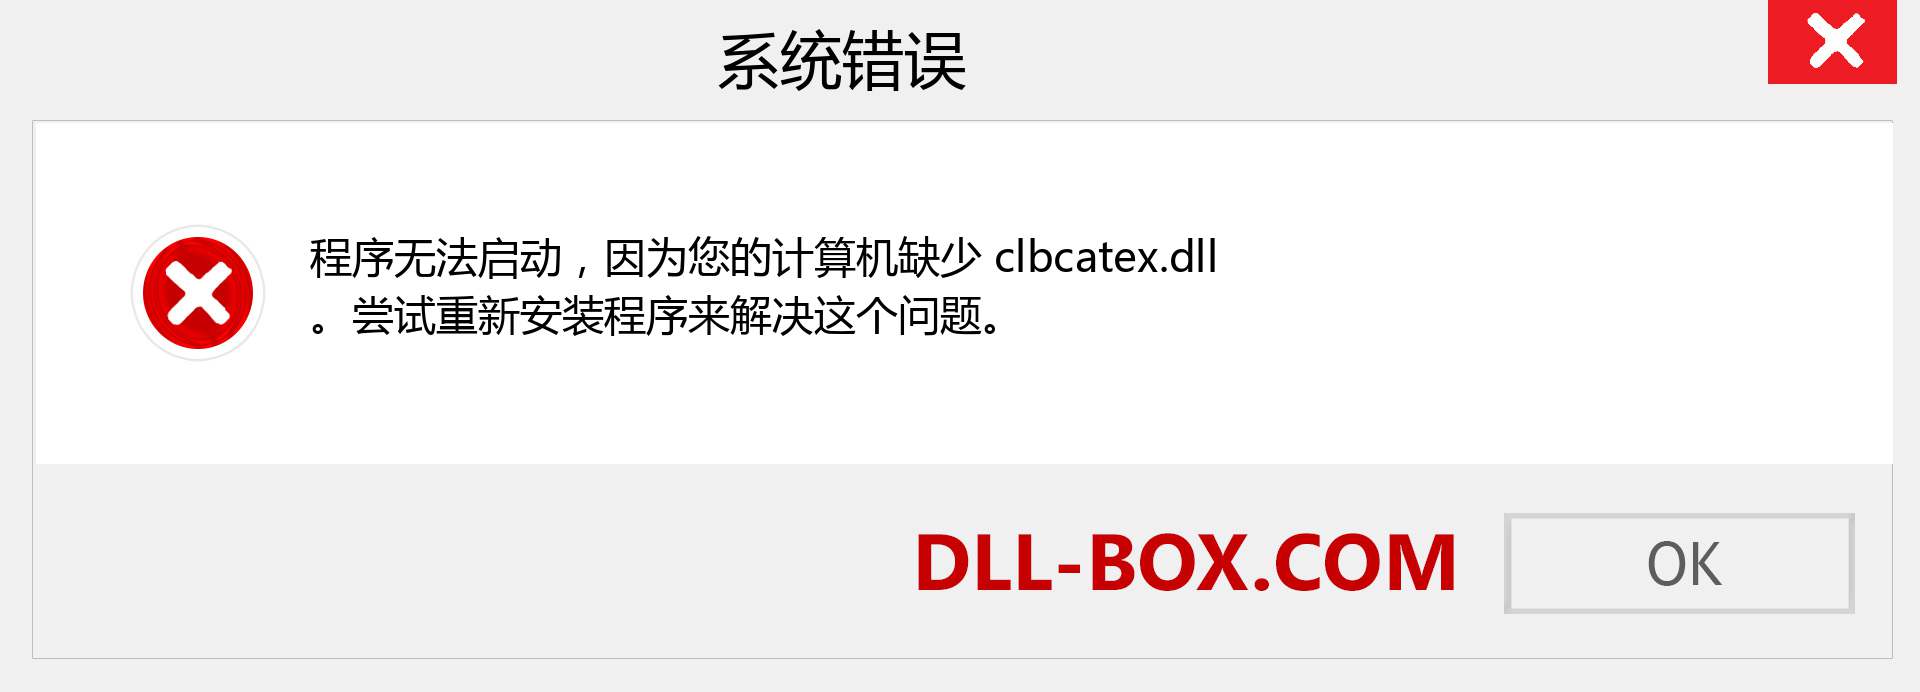 clbcatex.dll 文件丢失？。 适用于 Windows 7、8、10 的下载 - 修复 Windows、照片、图像上的 clbcatex dll 丢失错误